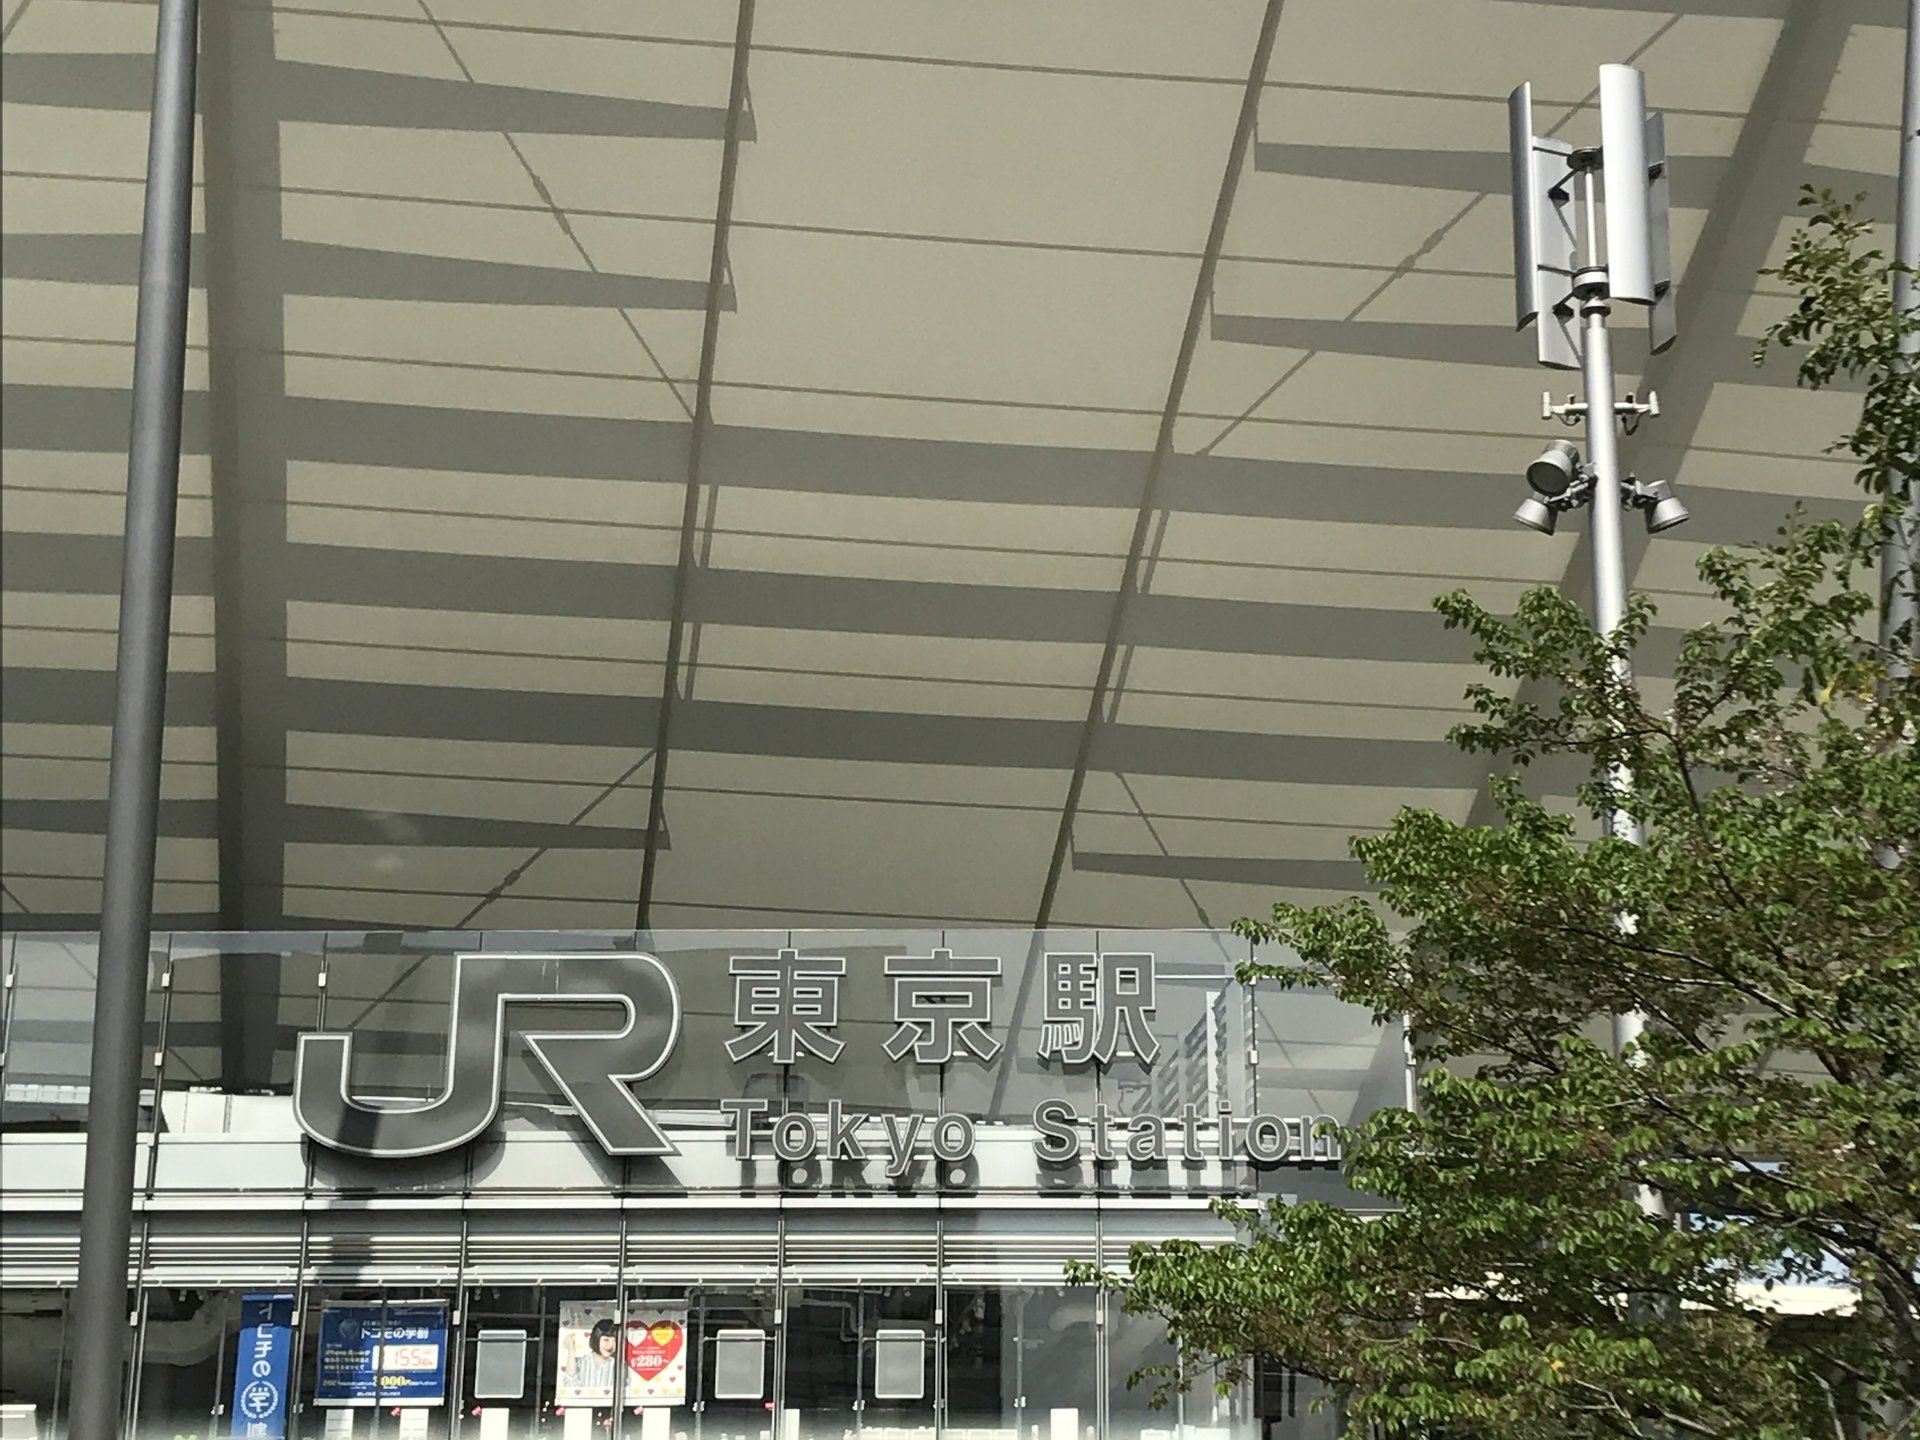 東京駅でプラプラ旅♫
〜読書好きの休日ライフ〜